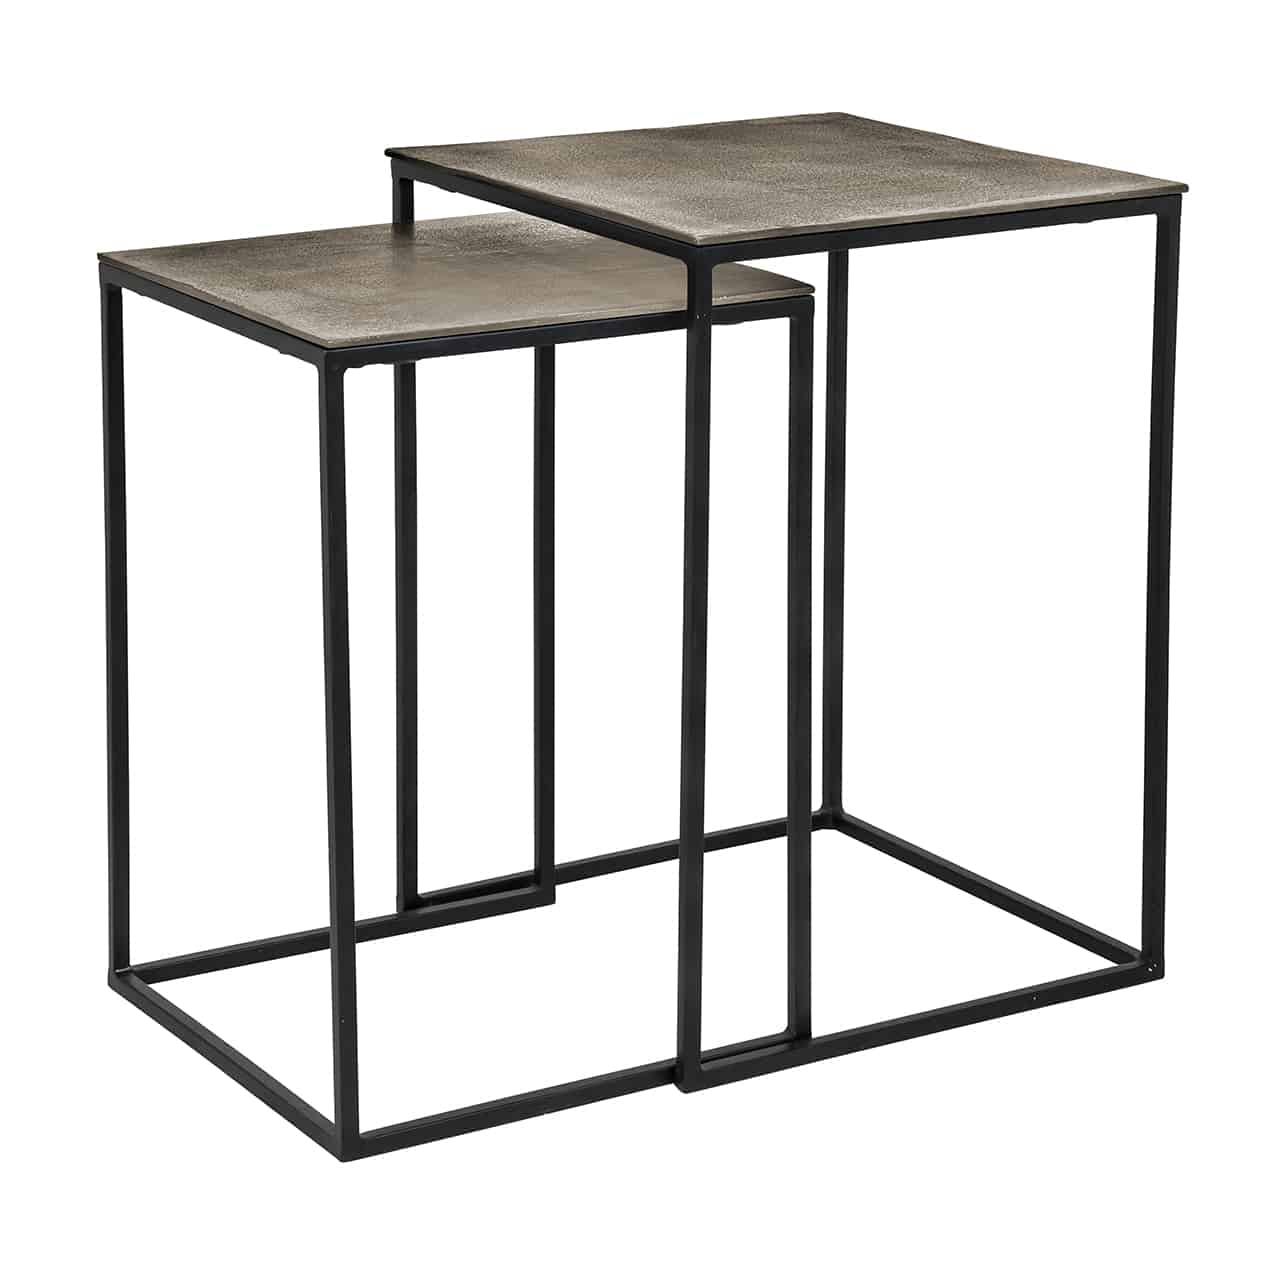 2er Set Beistelltische; zwei unterschiedlich große, quaderförmige Metallgestelle, aufrechtstehend, in schwarz mit brauner Tischplatte; leicht ineinandergeschoben.